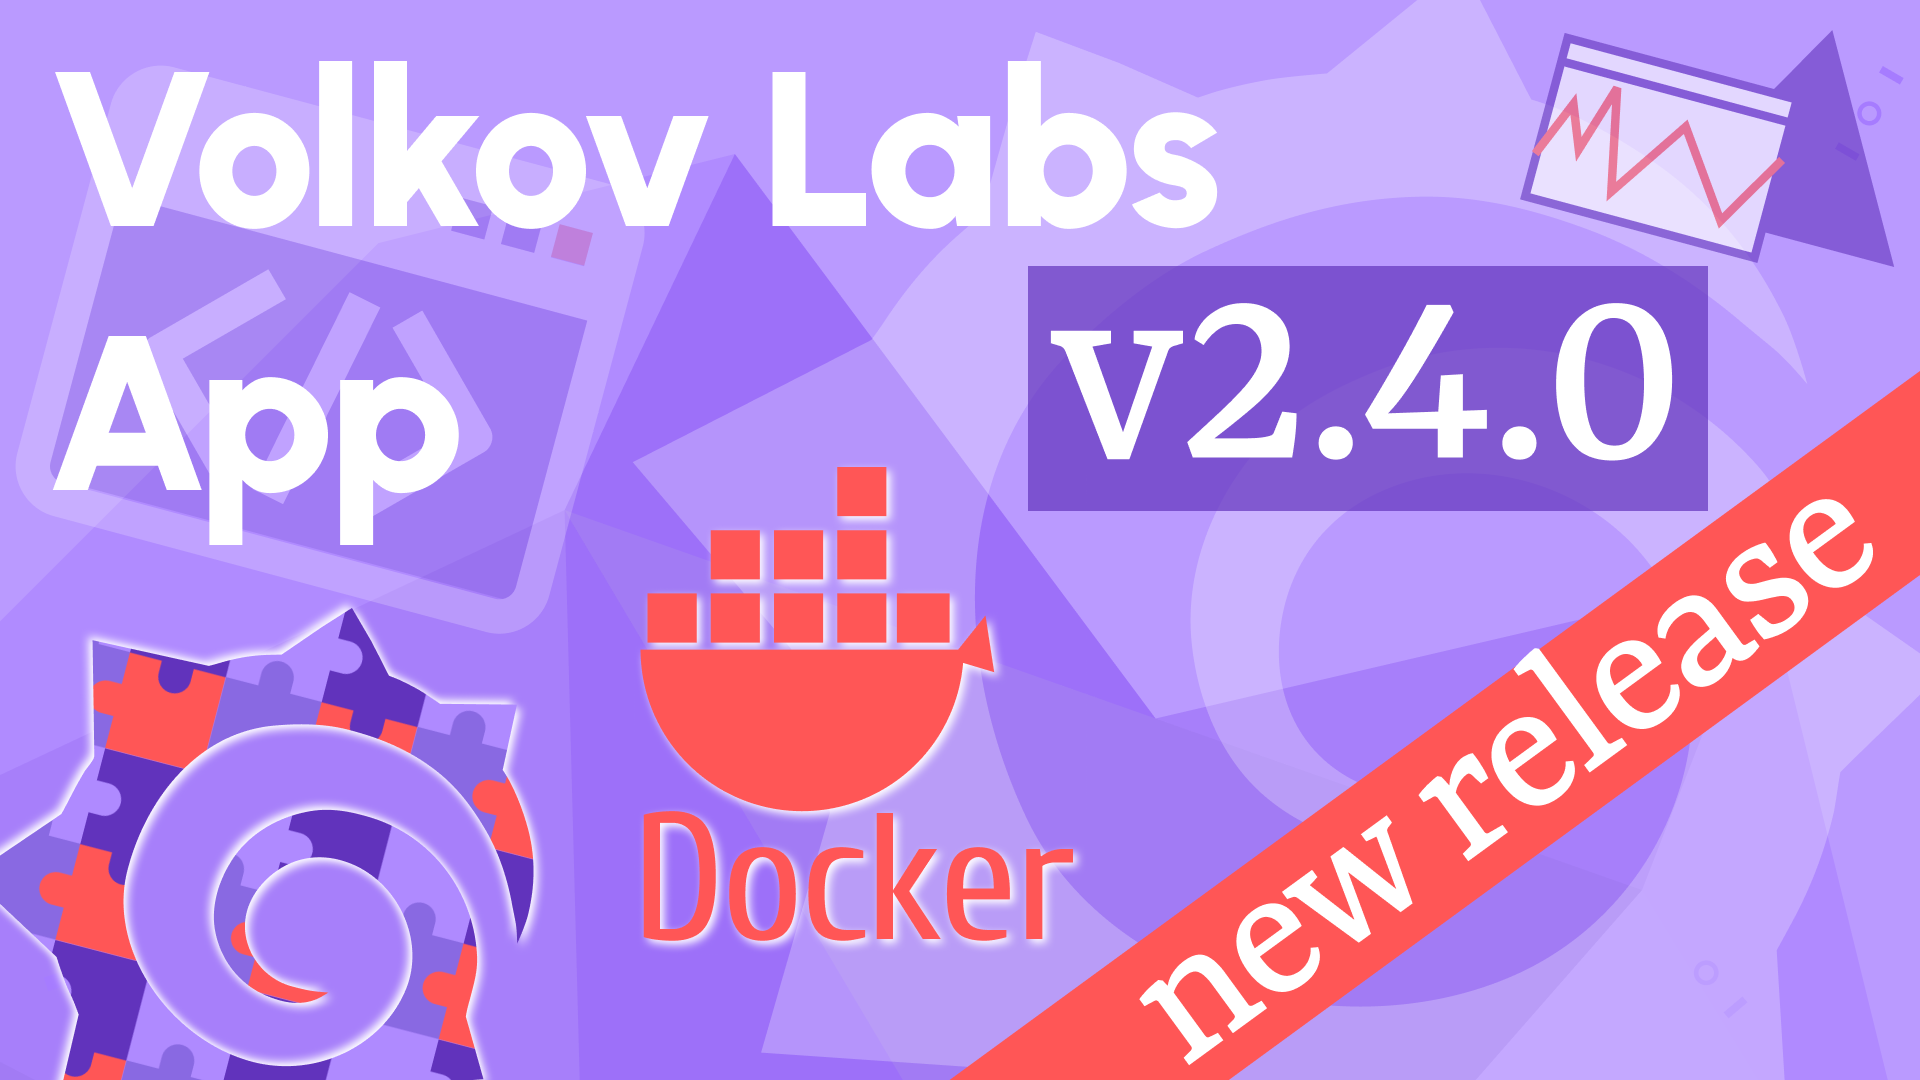 Volkov Labs App 2.4.0